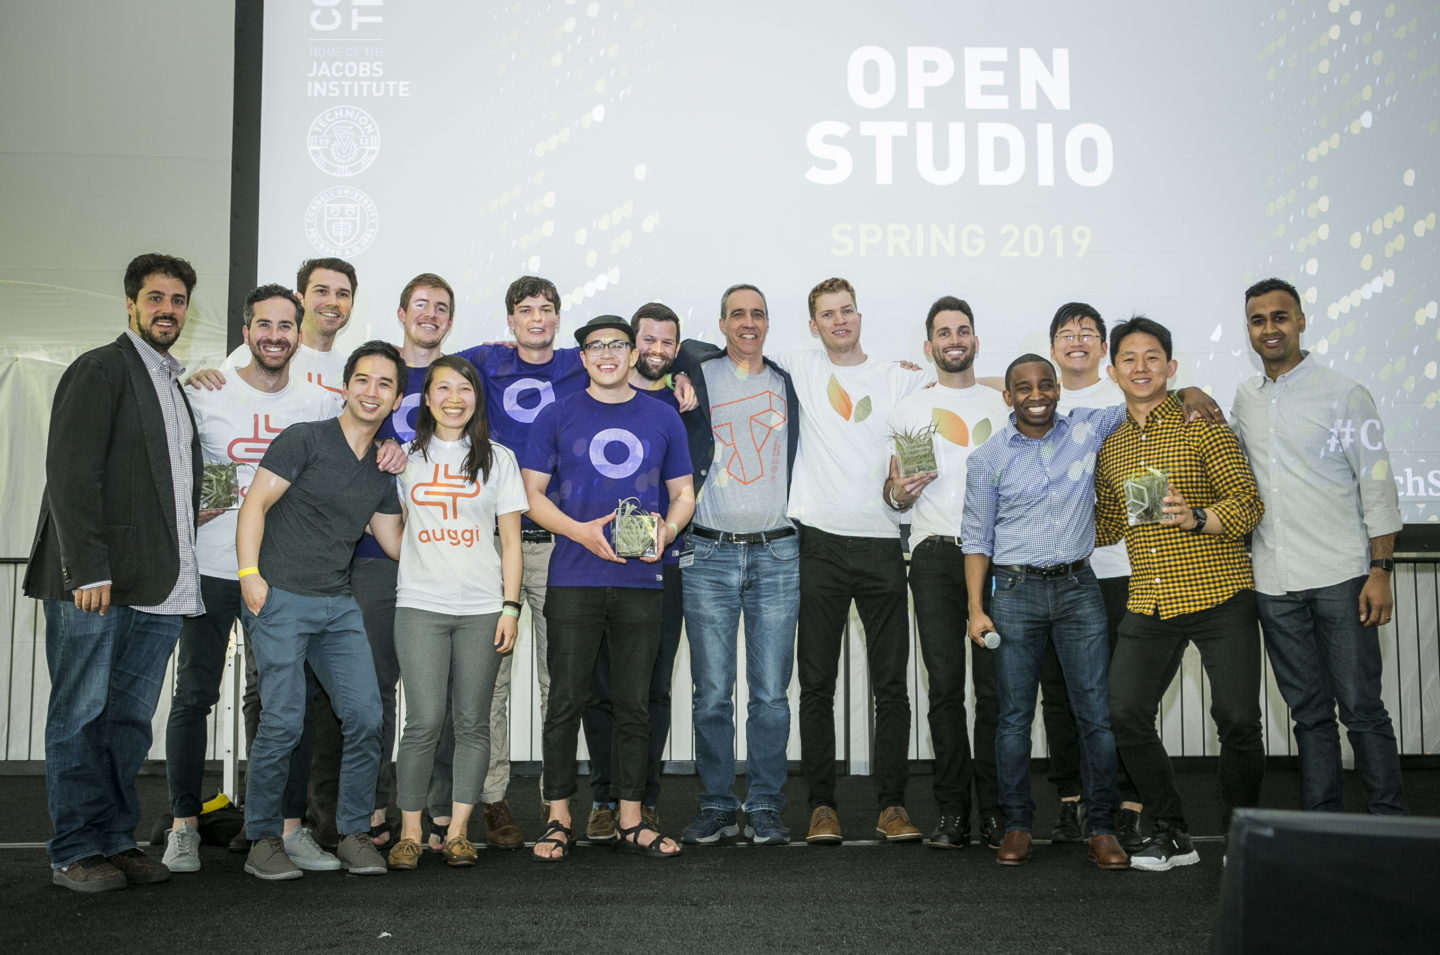 2019 Startup Award Winners and Studio advisors